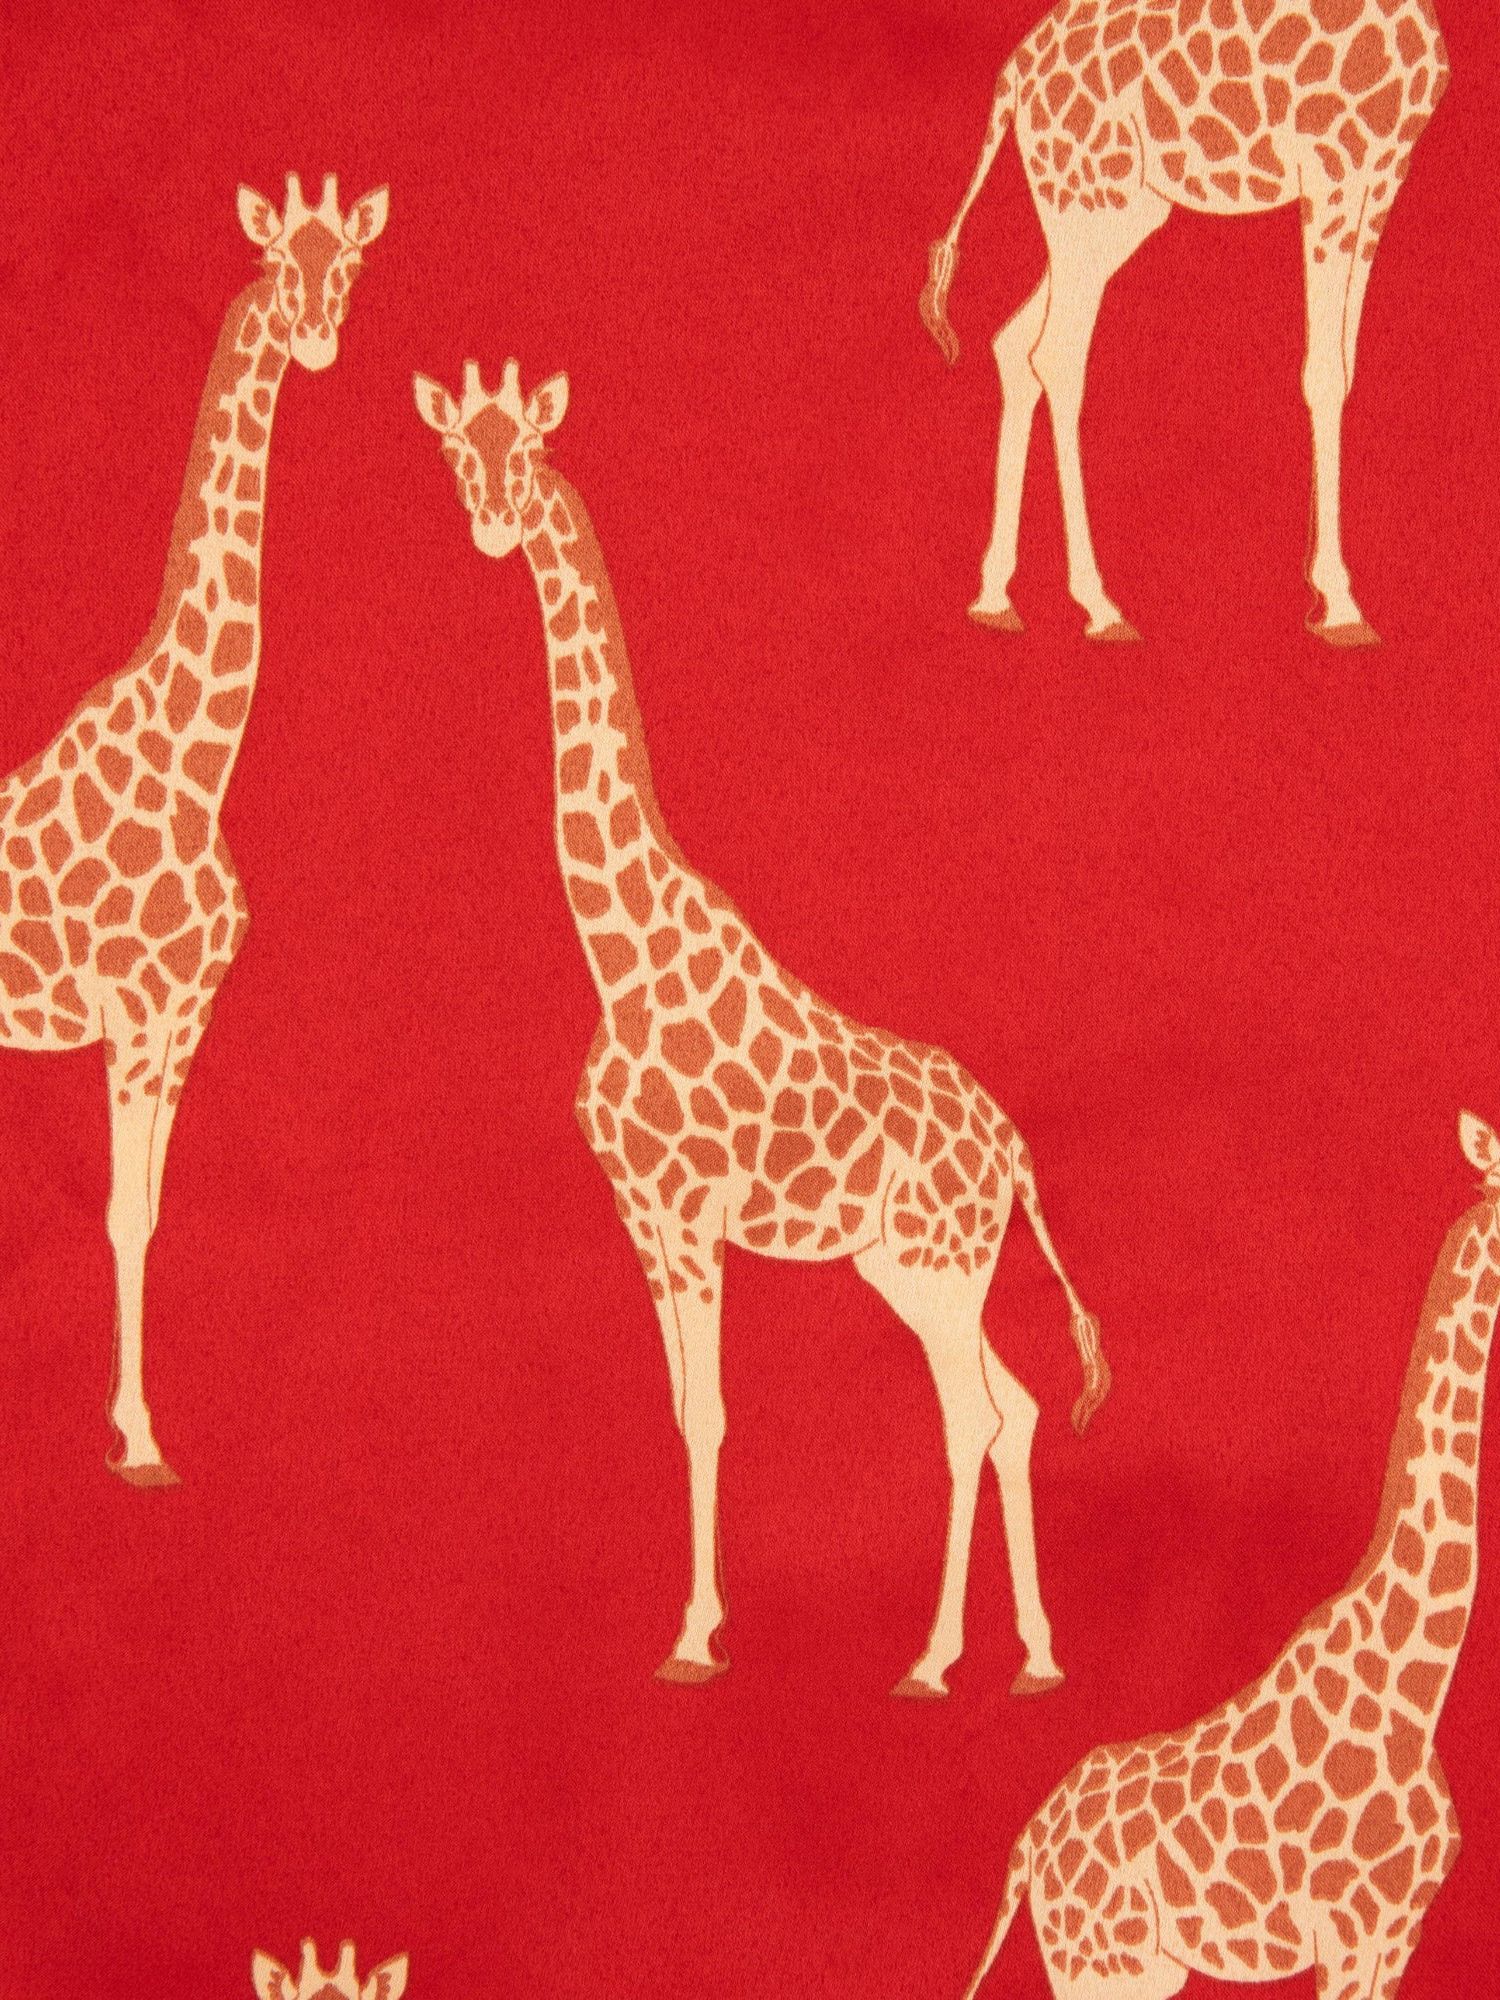 Chelsea Peers Kids' Satin Giraffe Shorts Pyjama Set, Red, 1-2 years